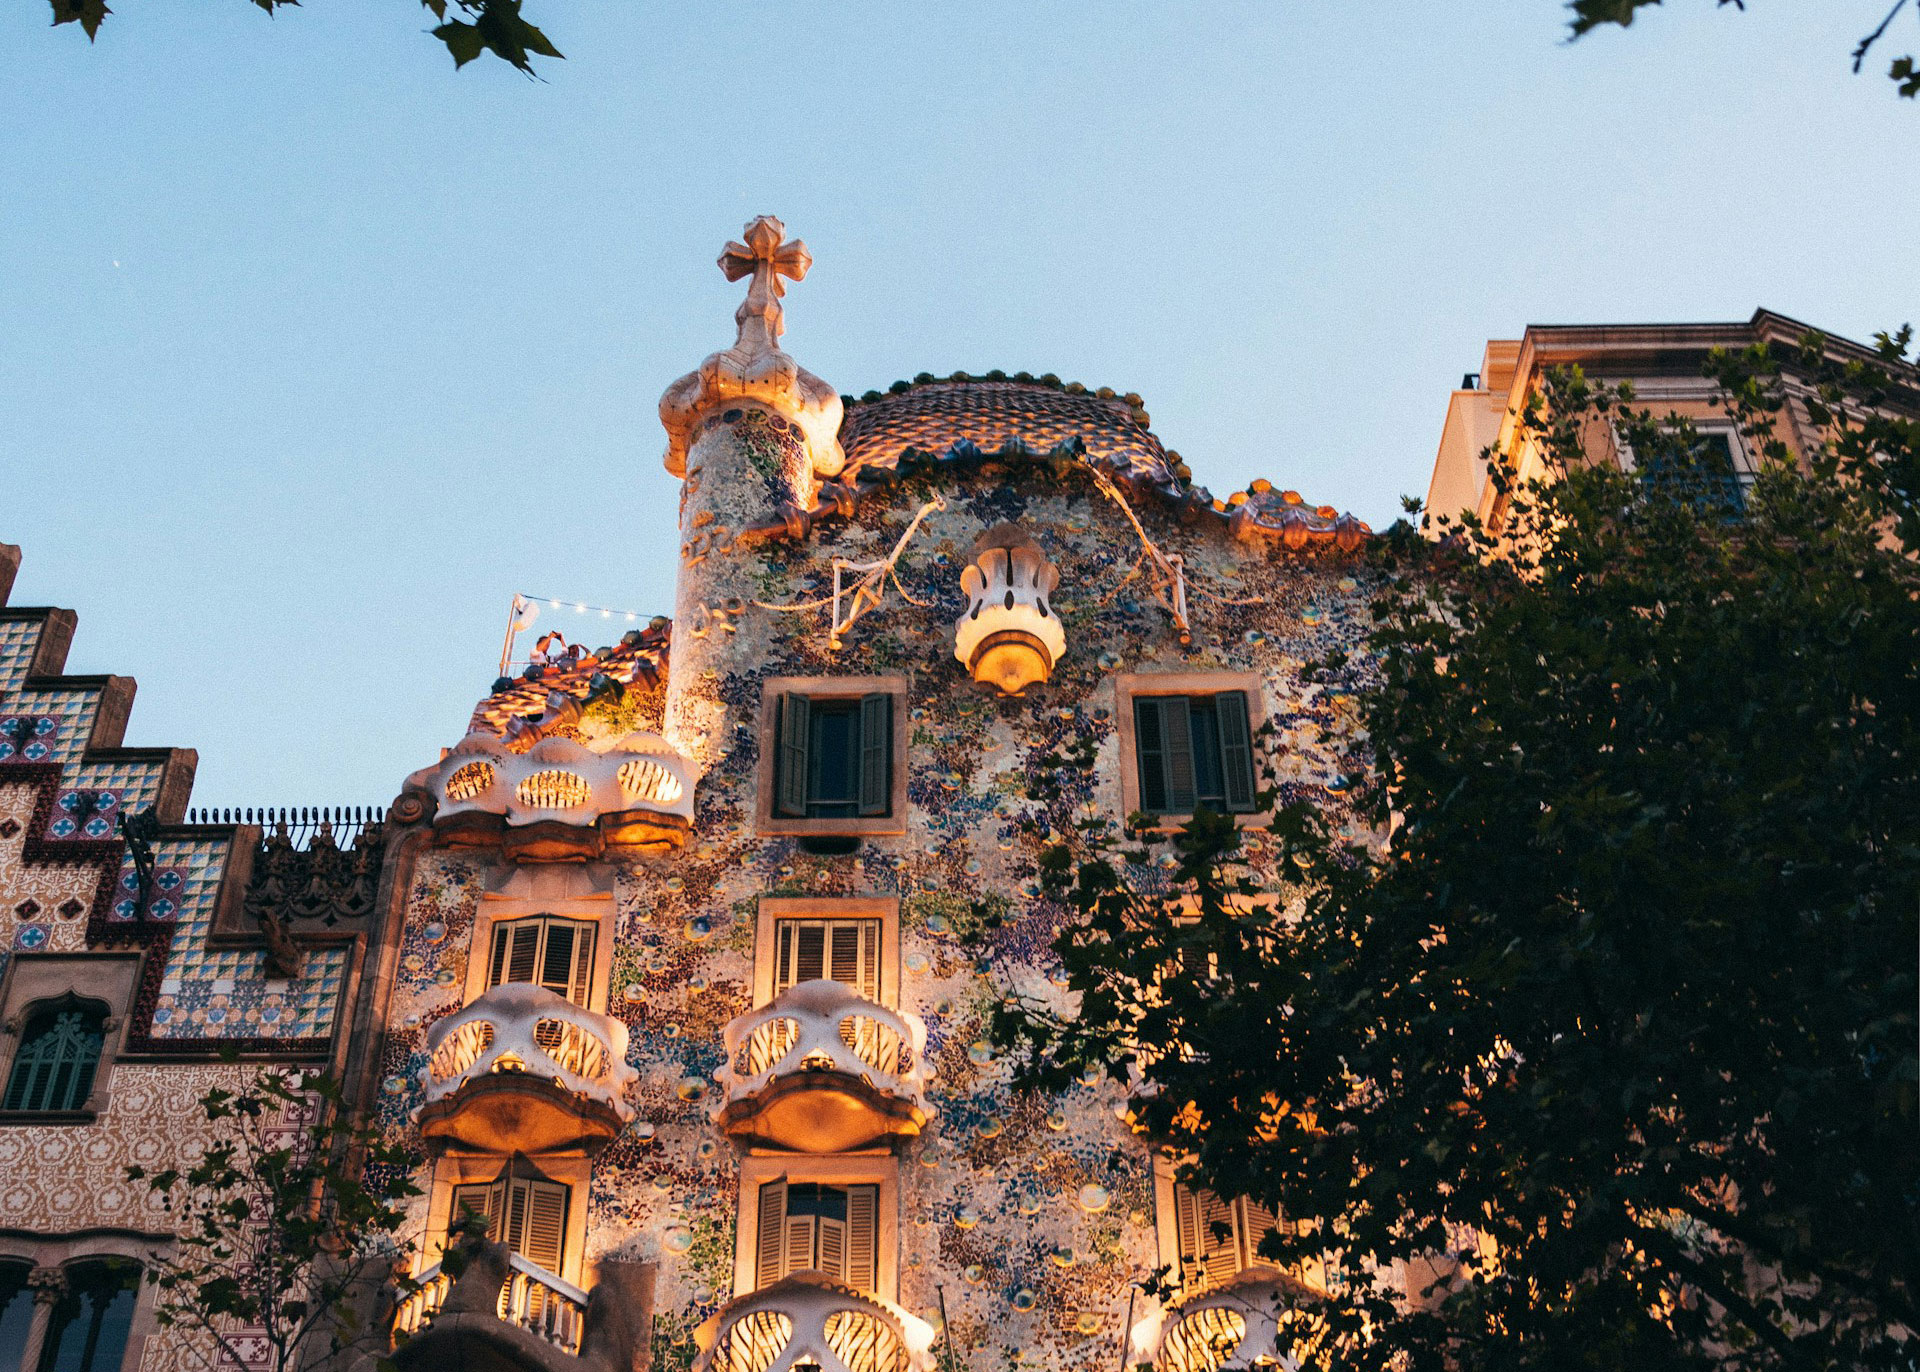 Casa Batlló, Passeig de Gràcia, Barcelona, Spain